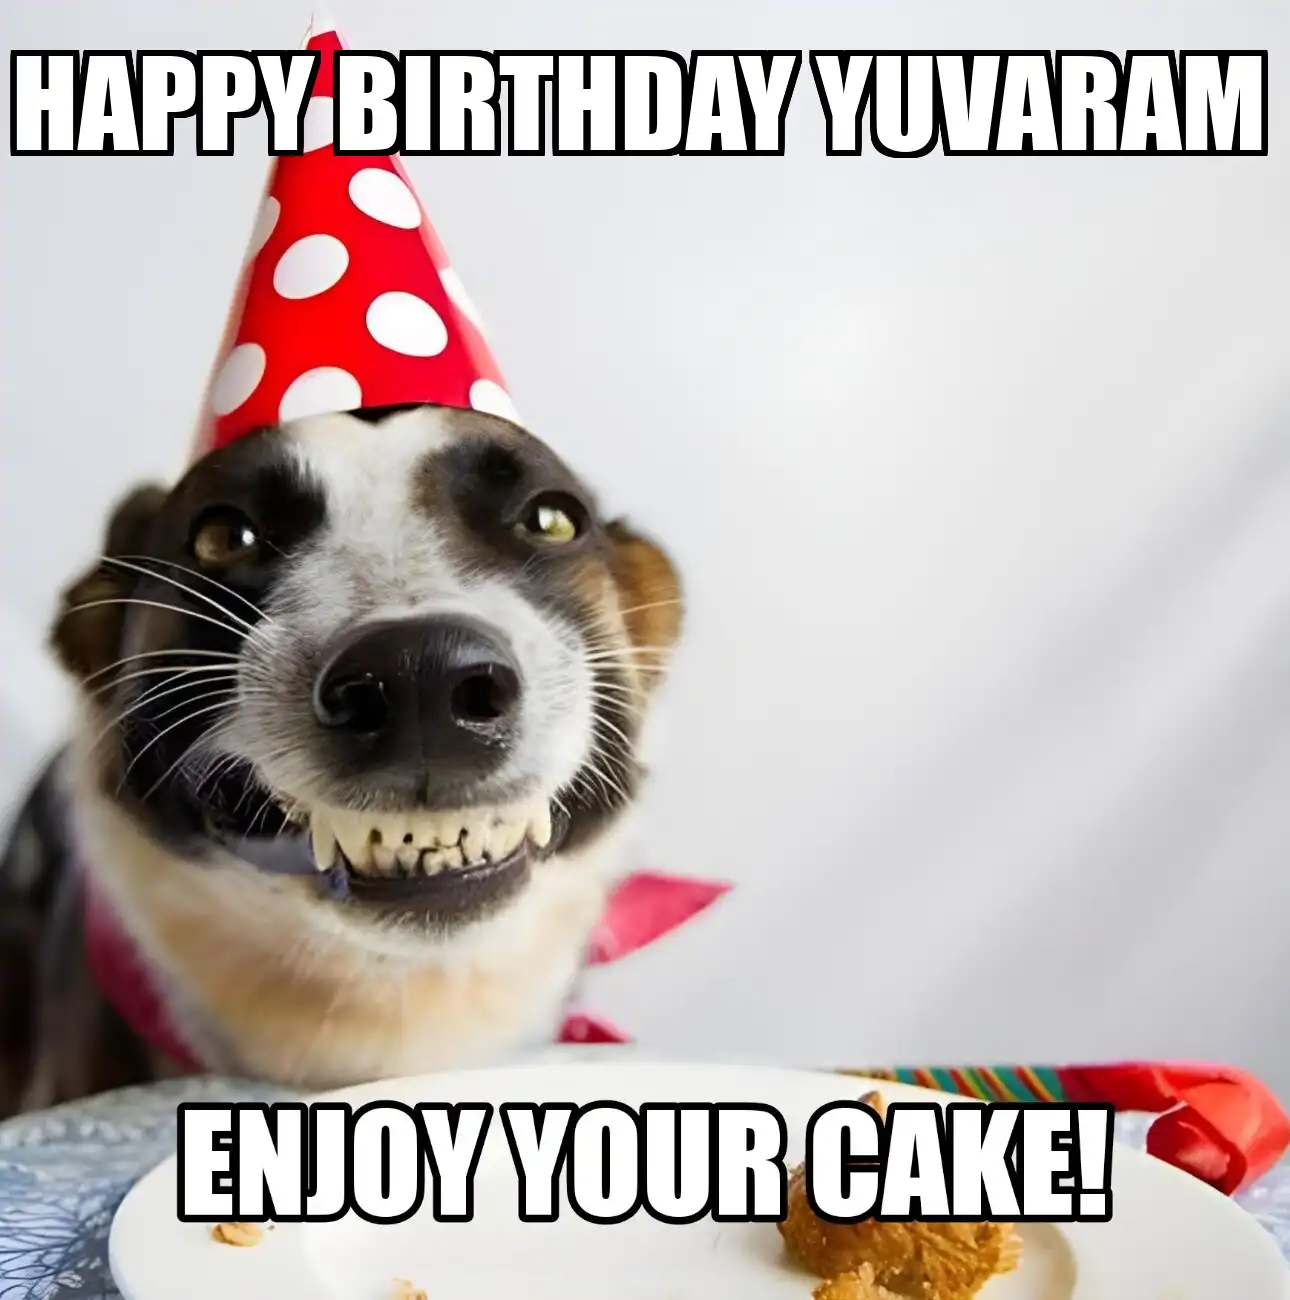 Happy Birthday Yuvaram Enjoy Your Cake Dog Meme